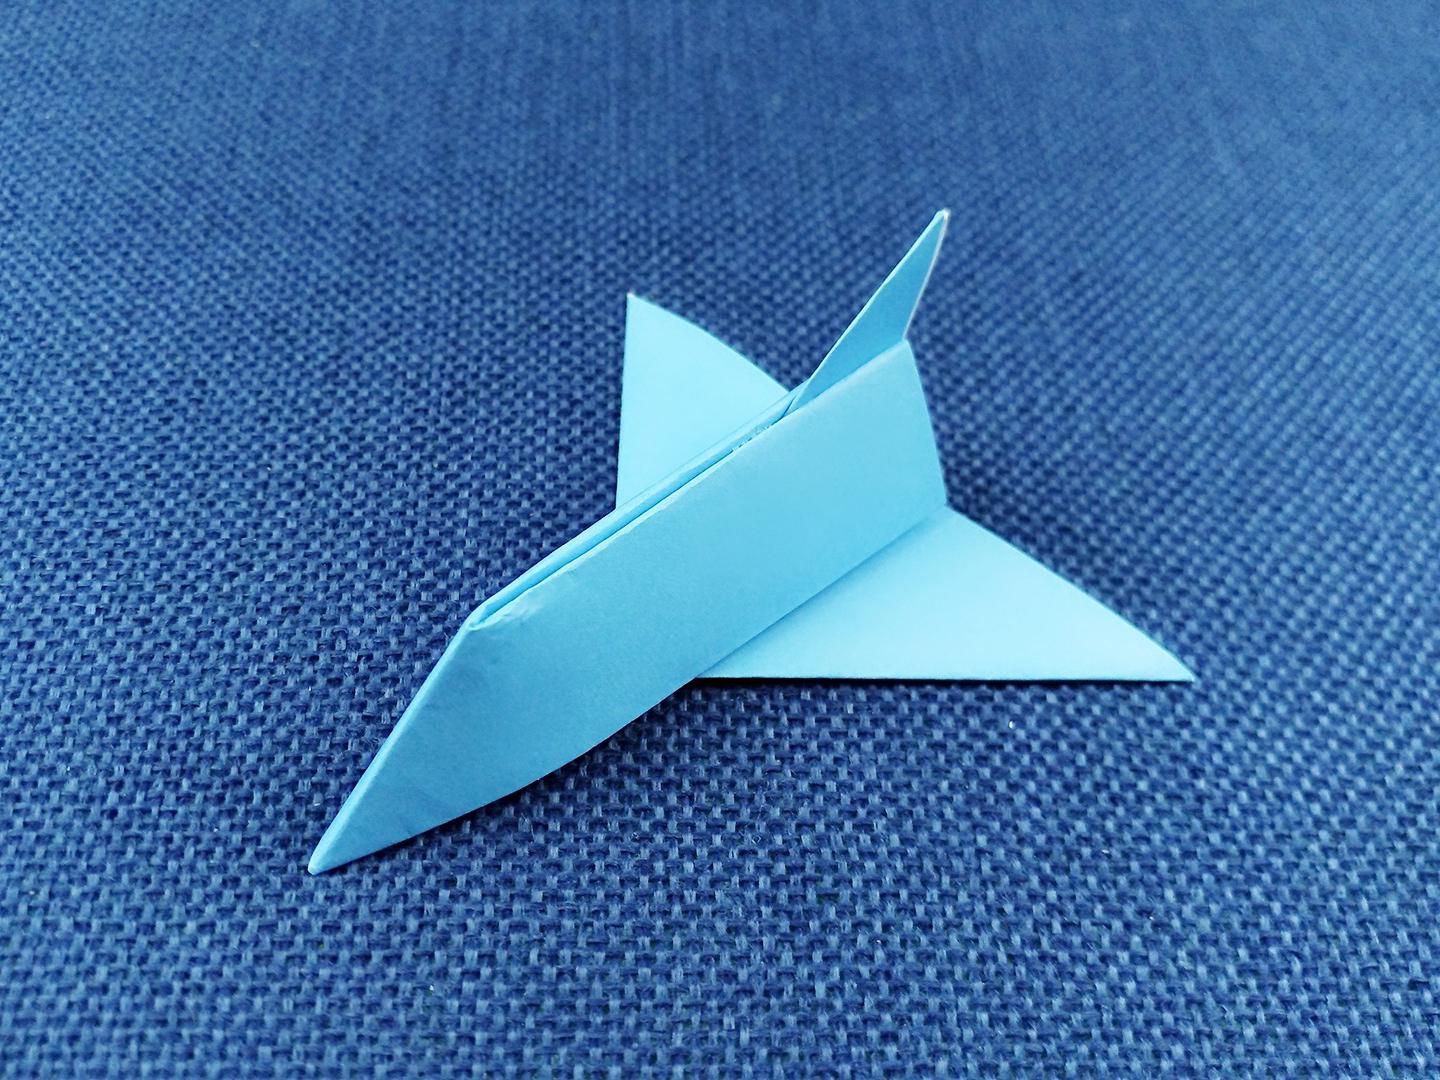 1纸飞机的创意折法 2立体纸飞机的折法  01:10  来源:经验视频-巧手